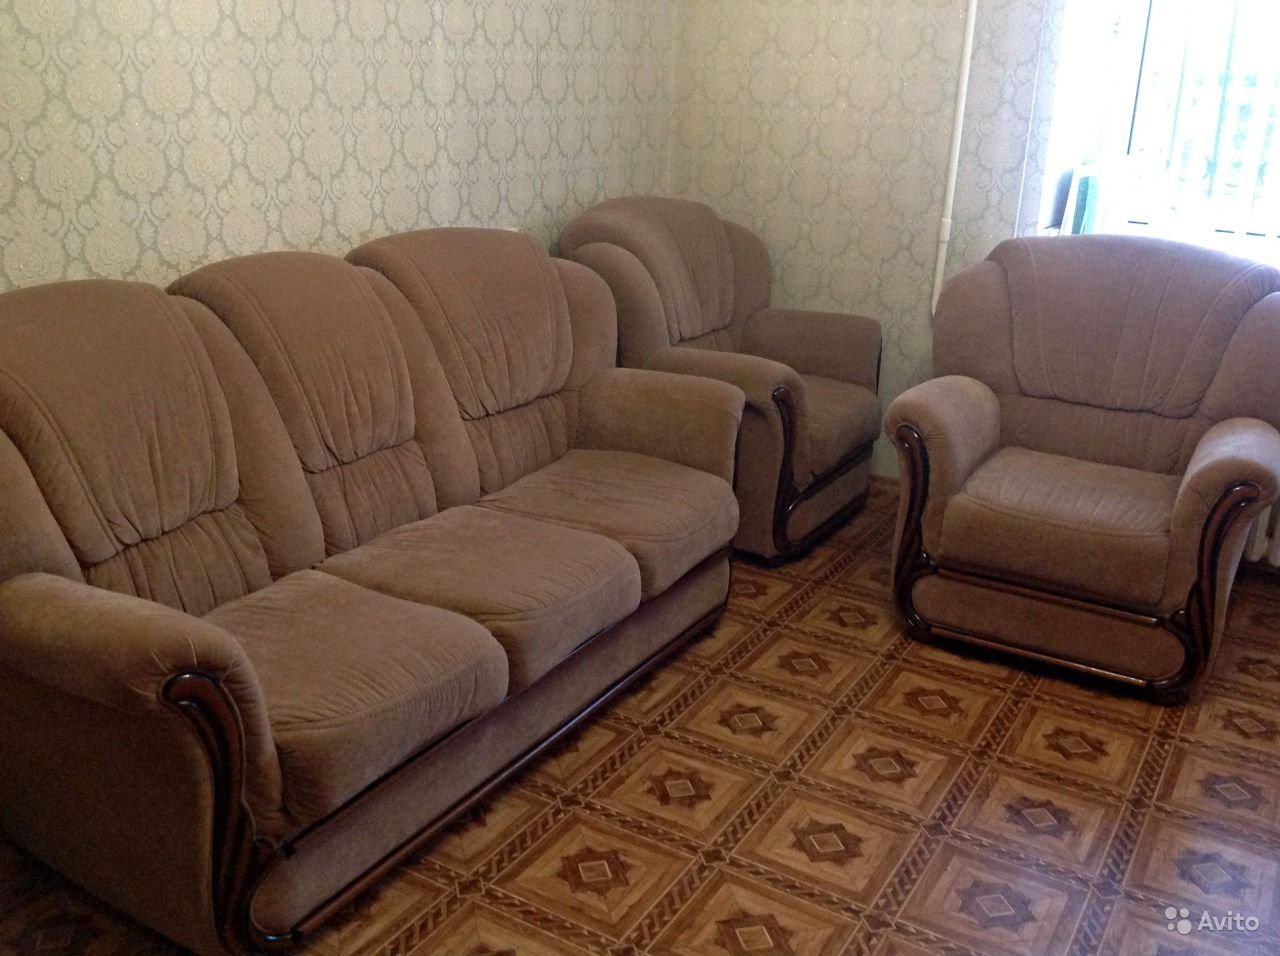 Продажа б у саратов. Комплект диван и 2 кресла. Комплект мебели диван и два кресла. Комплект диван и 2 кресла до 20000 рублей. Комплект диван и 2 кресла мягкие серый.